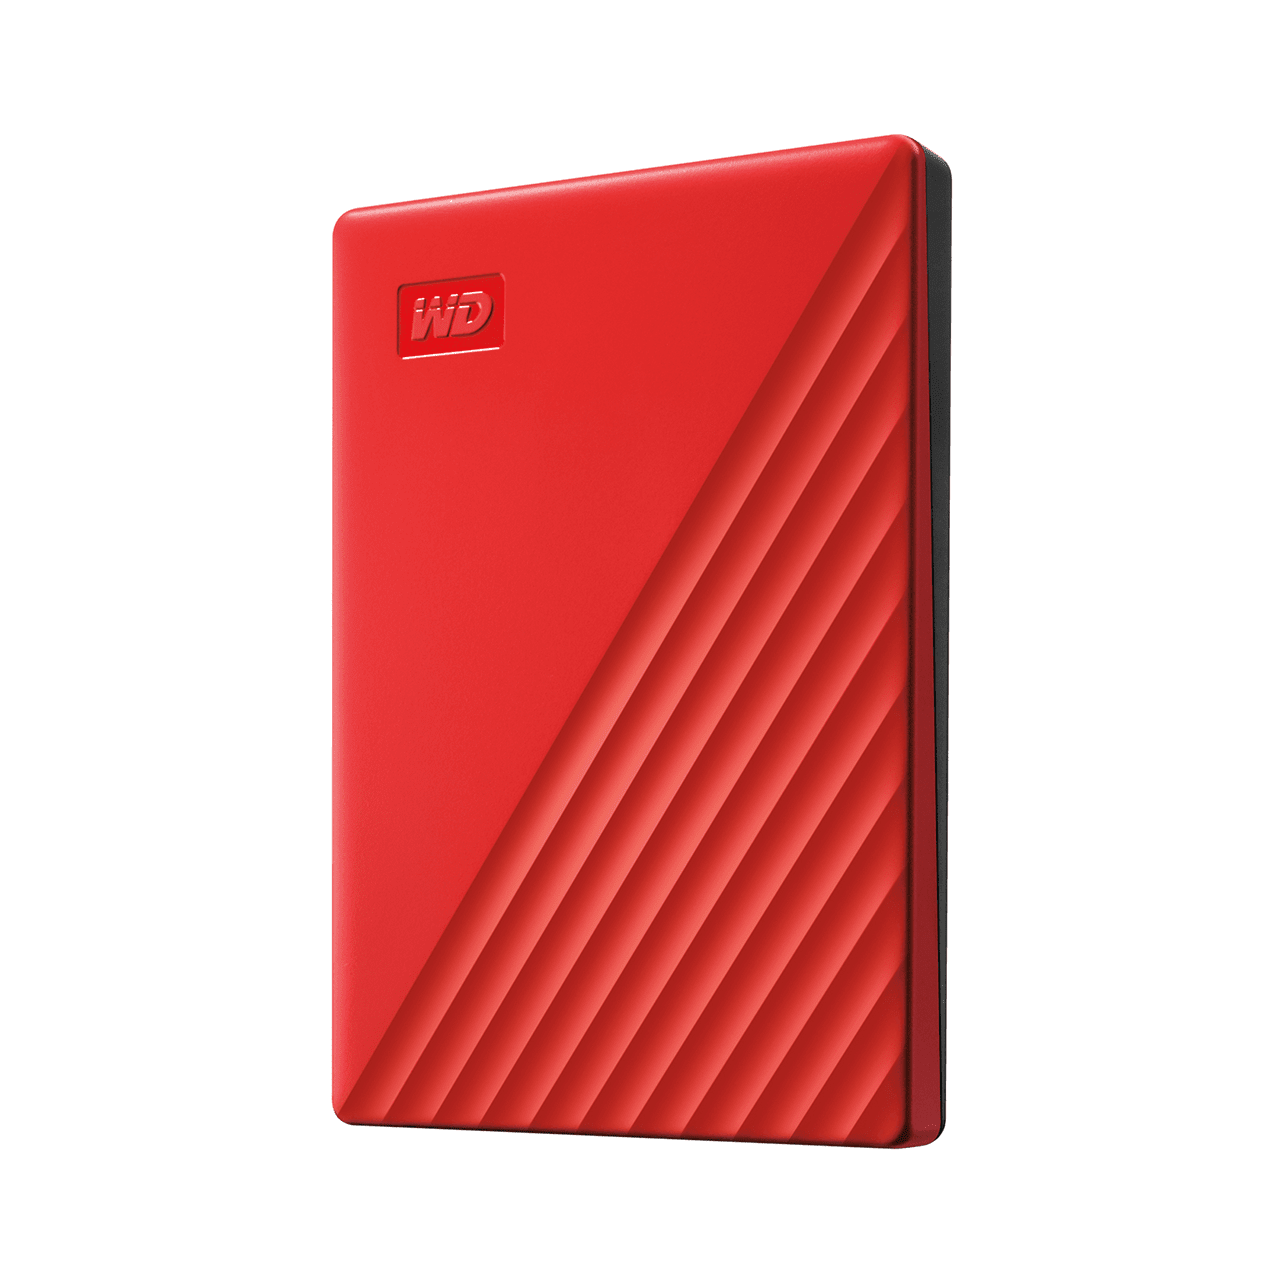 Ổ cứng WD My Passport New USB 3.2 2TB Red Hàng Chính Hãng